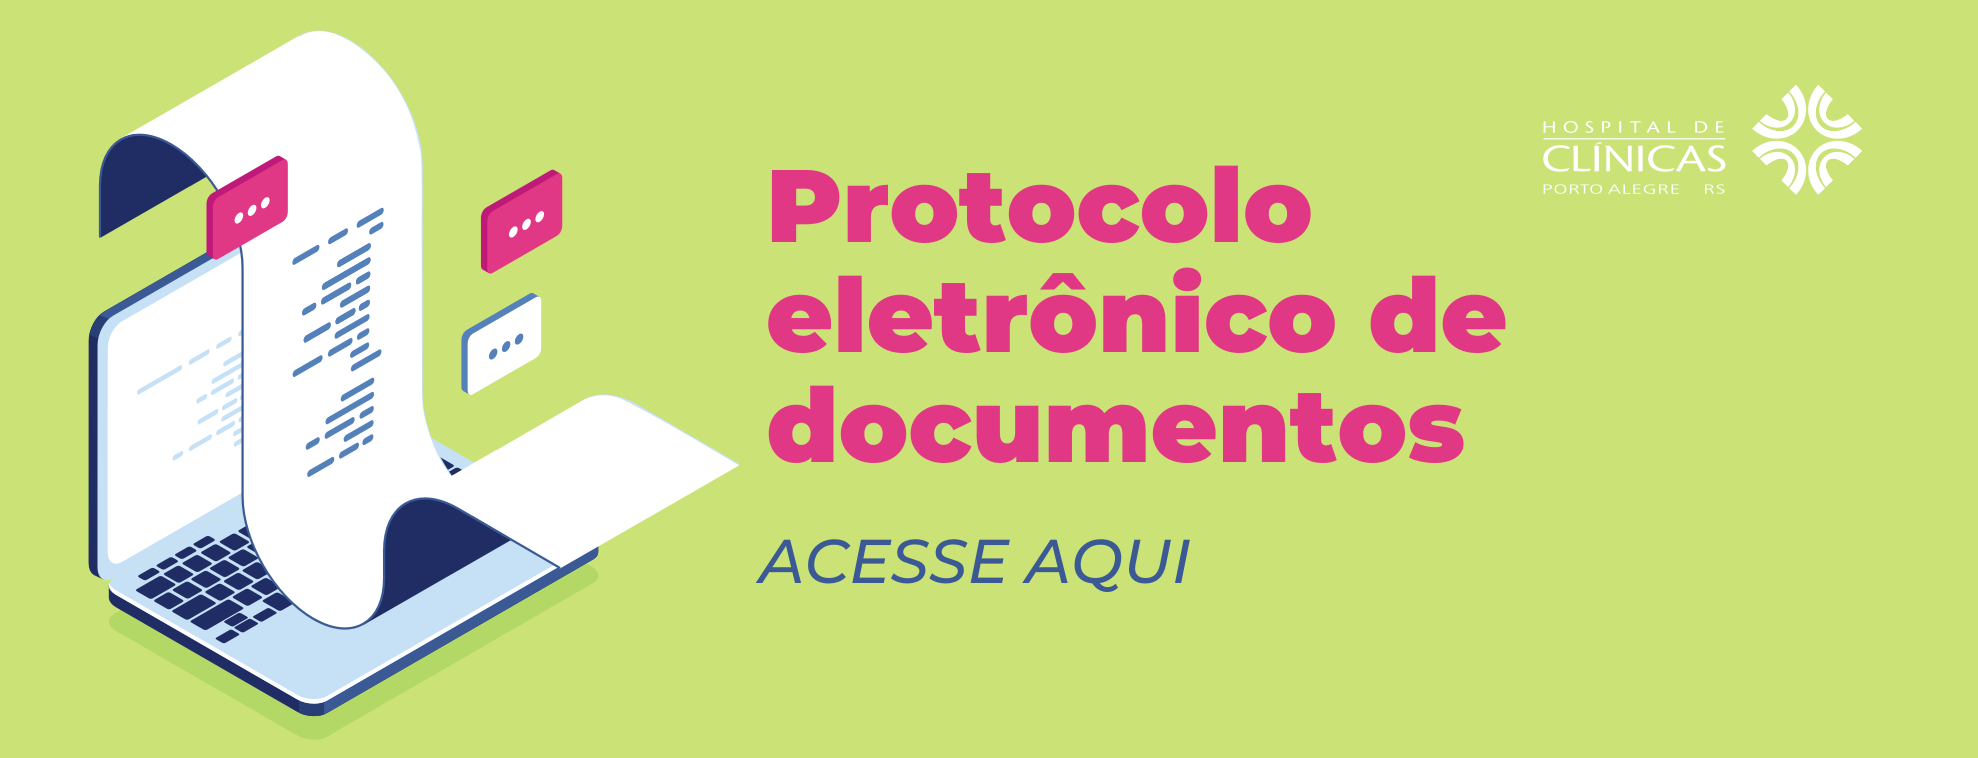 Protocolo eletrônico de documentos